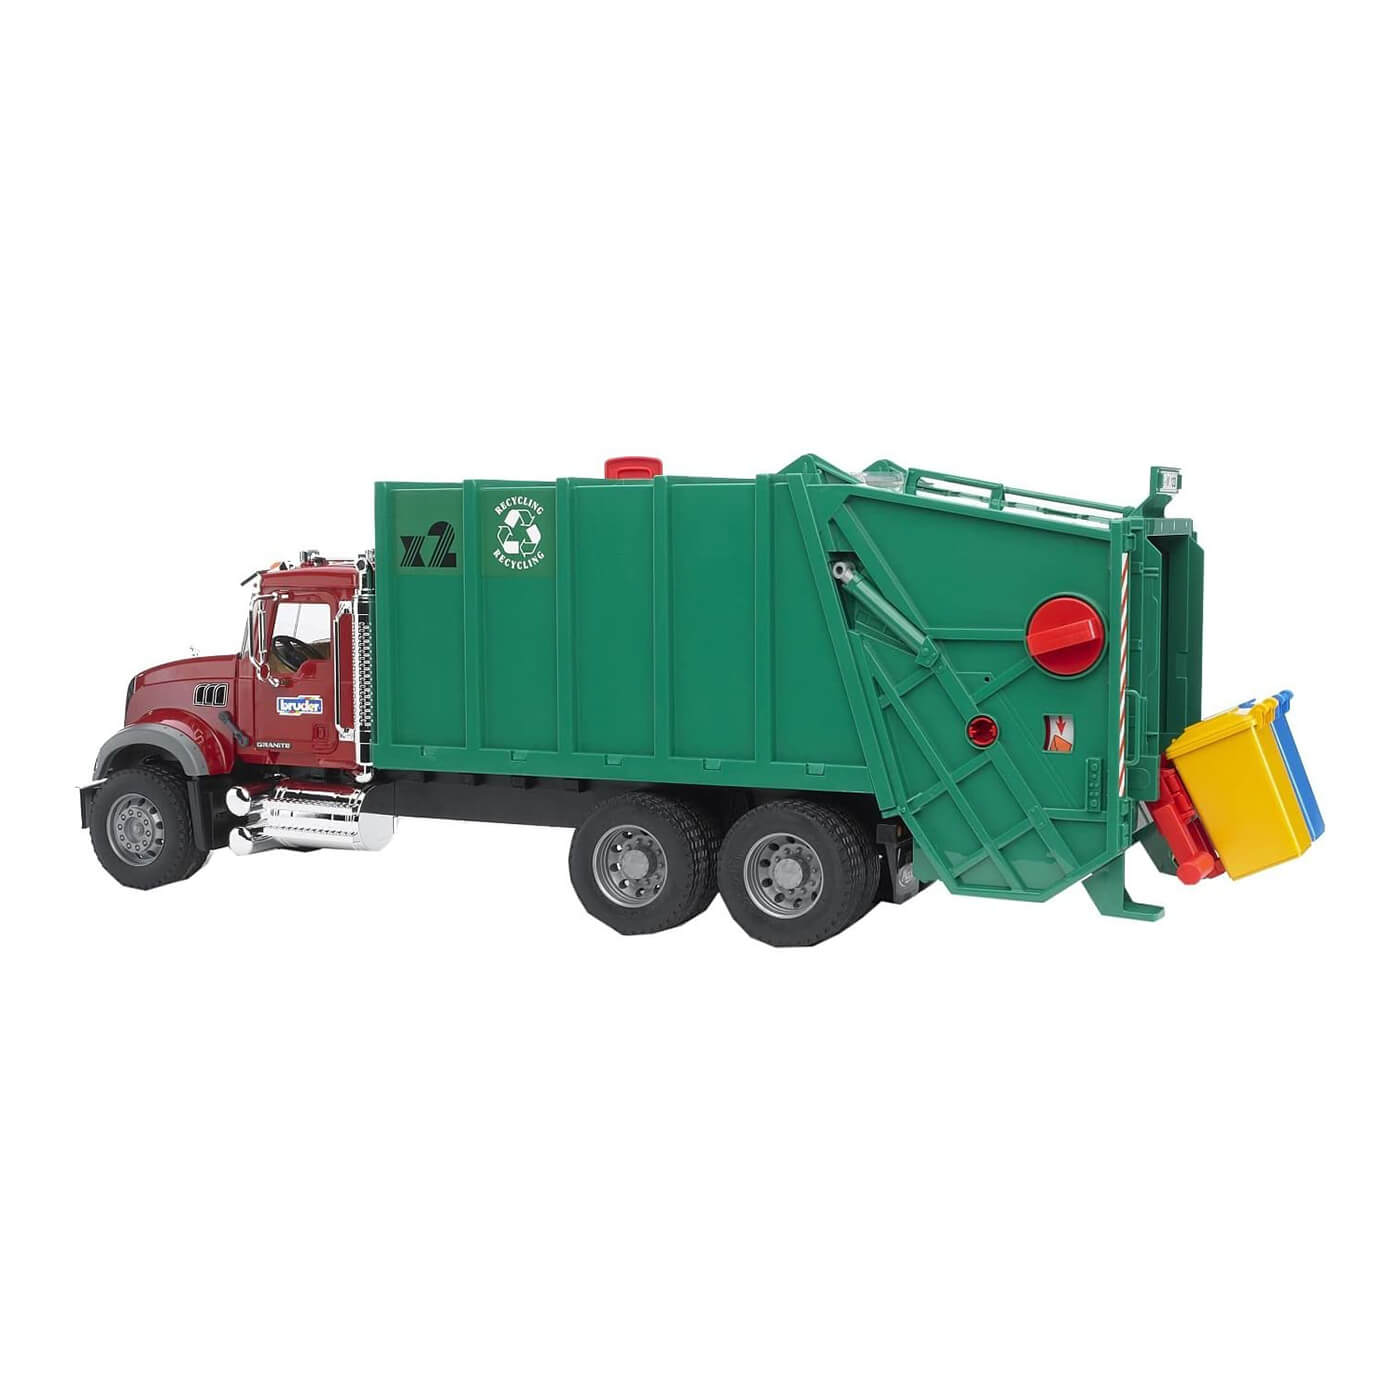 Bruder Pro Series 1:16 Scale Mack Granite Garbage Truck Ruby Red Green